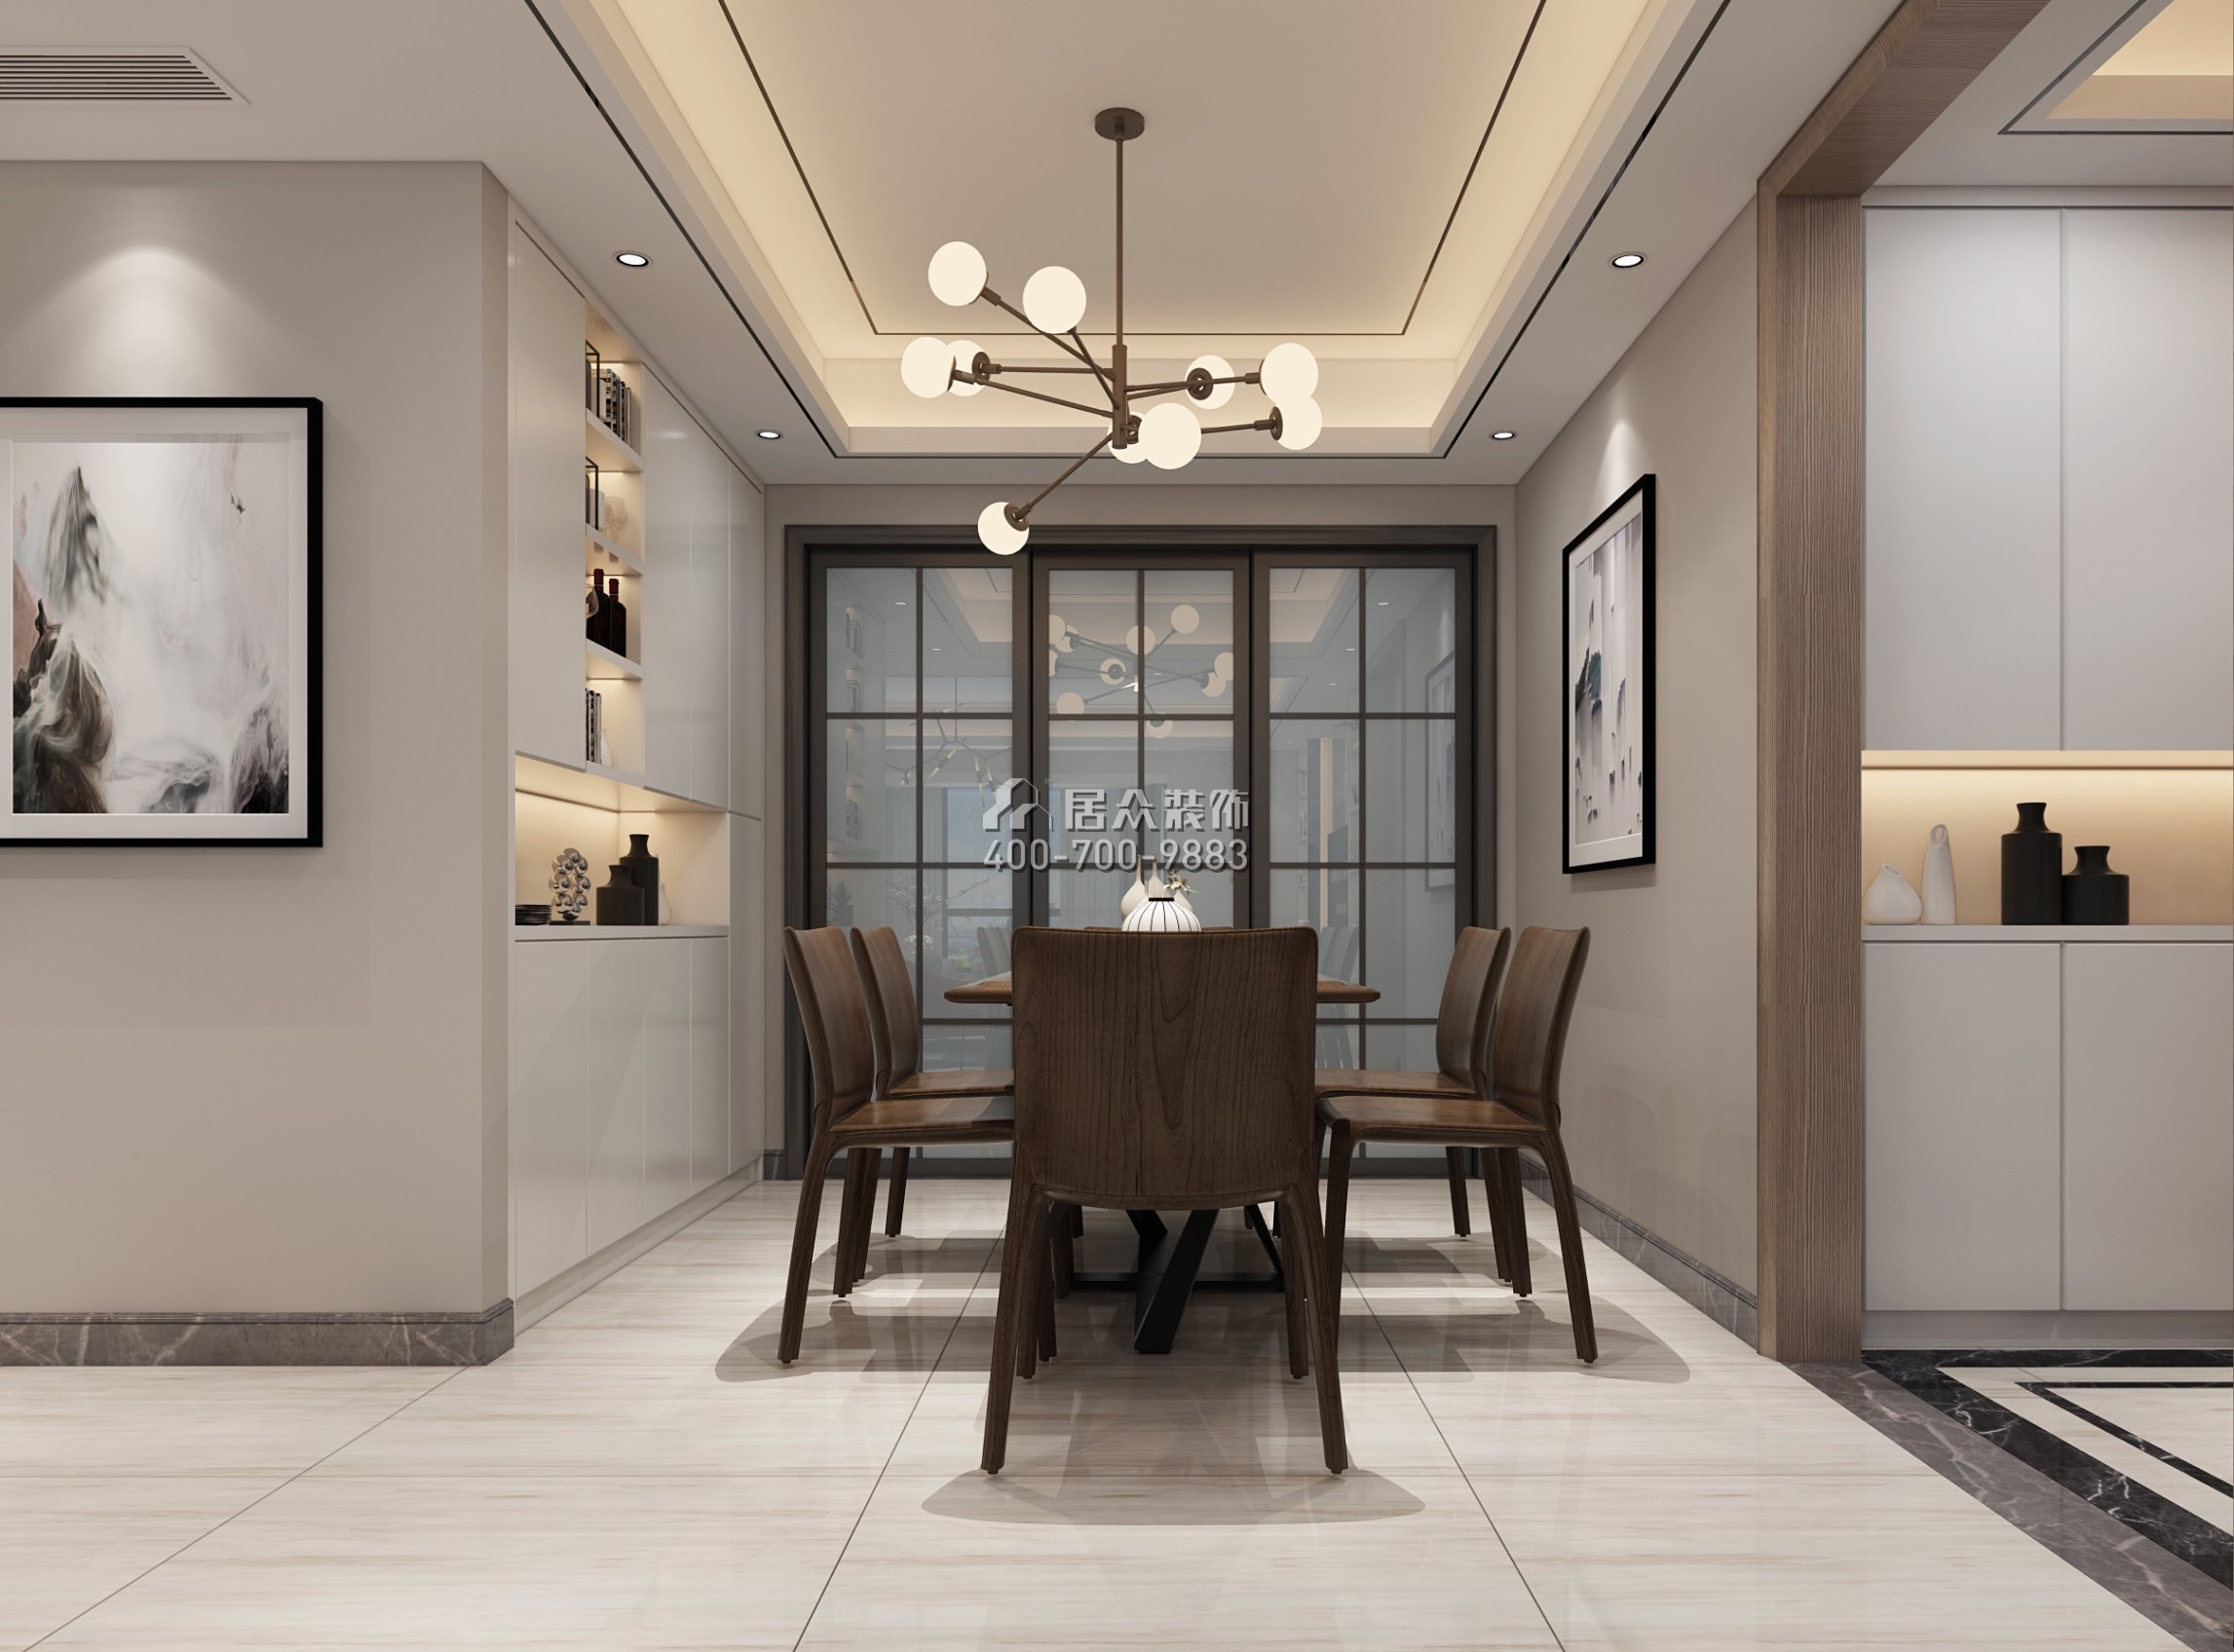 皇家翠苑150平方米现代简约风格平层户型餐厅装修效果图